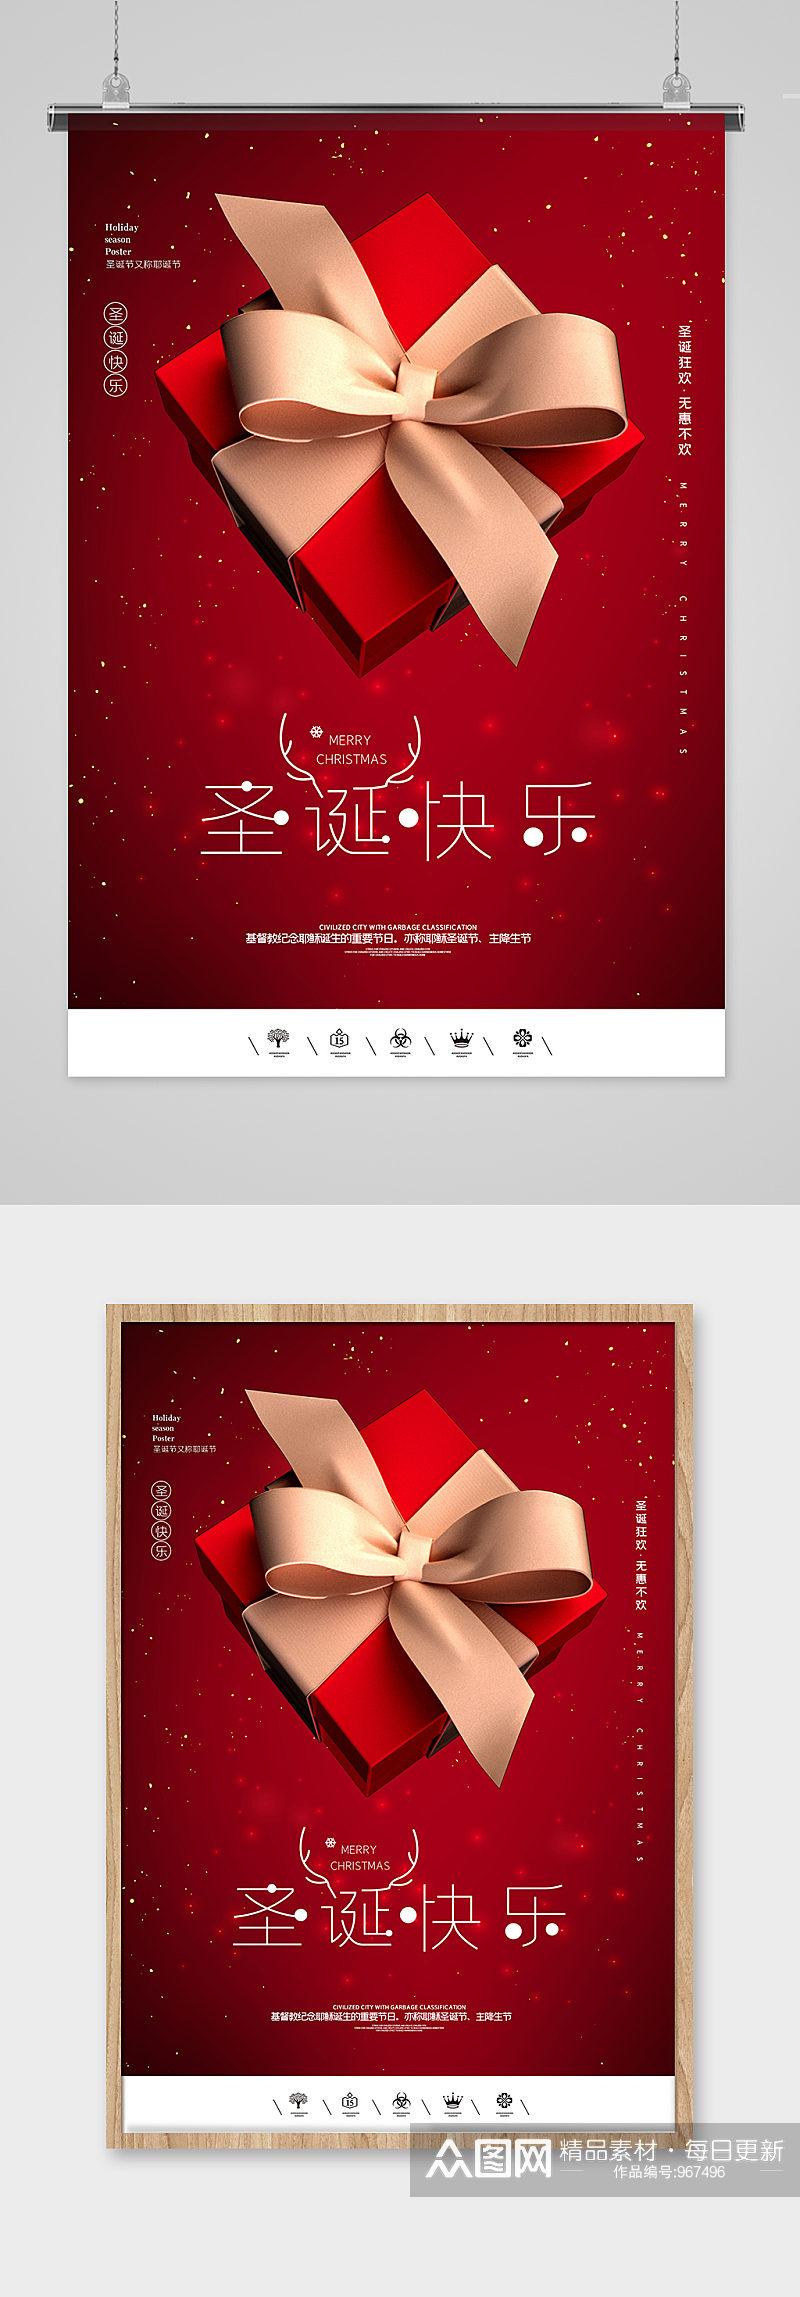 圣诞节极简红色礼盒节日海报素材